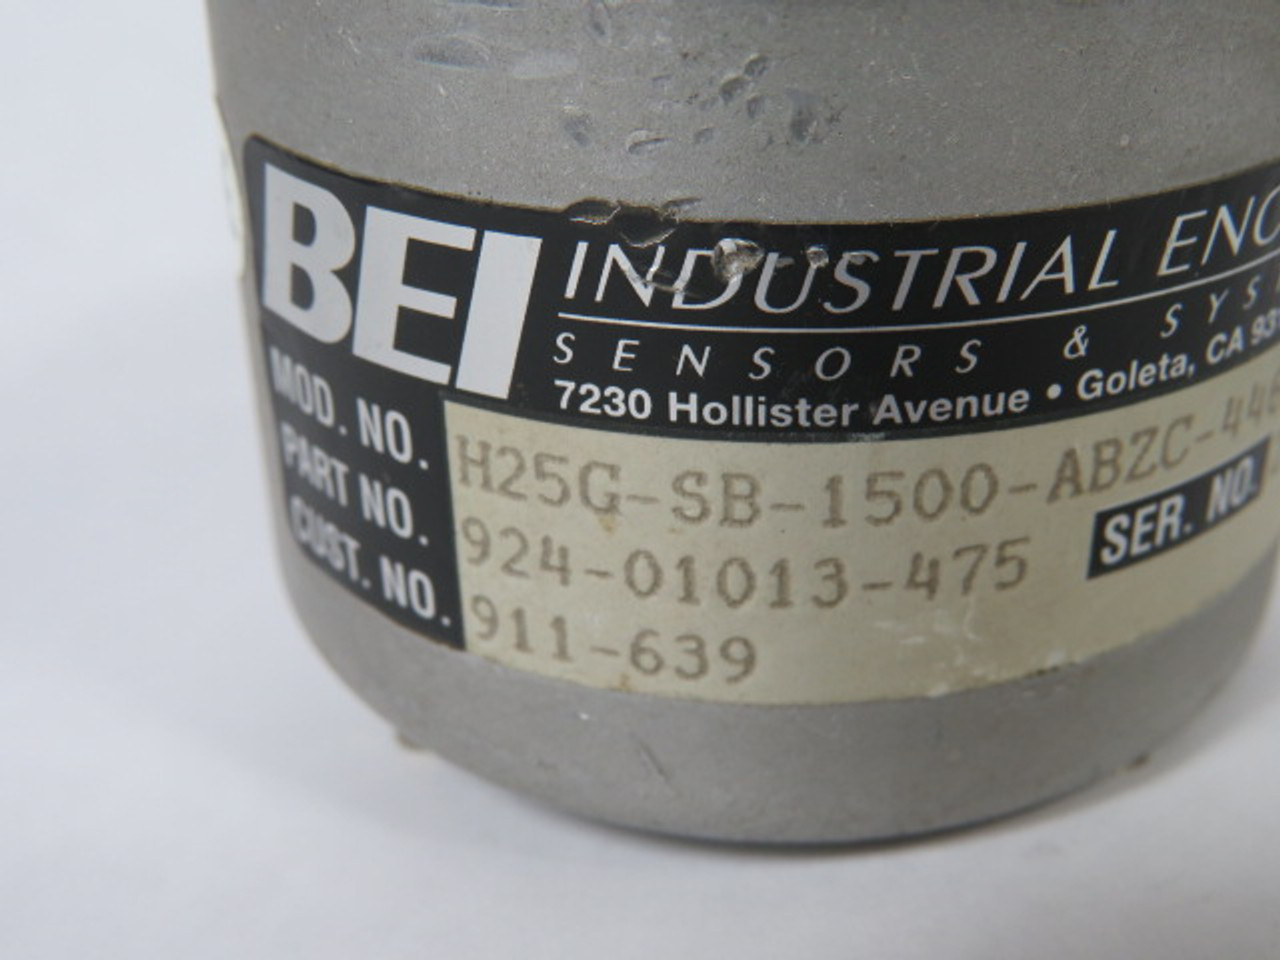 BEI 924-01013-475 Encoder 5-15VDC USED